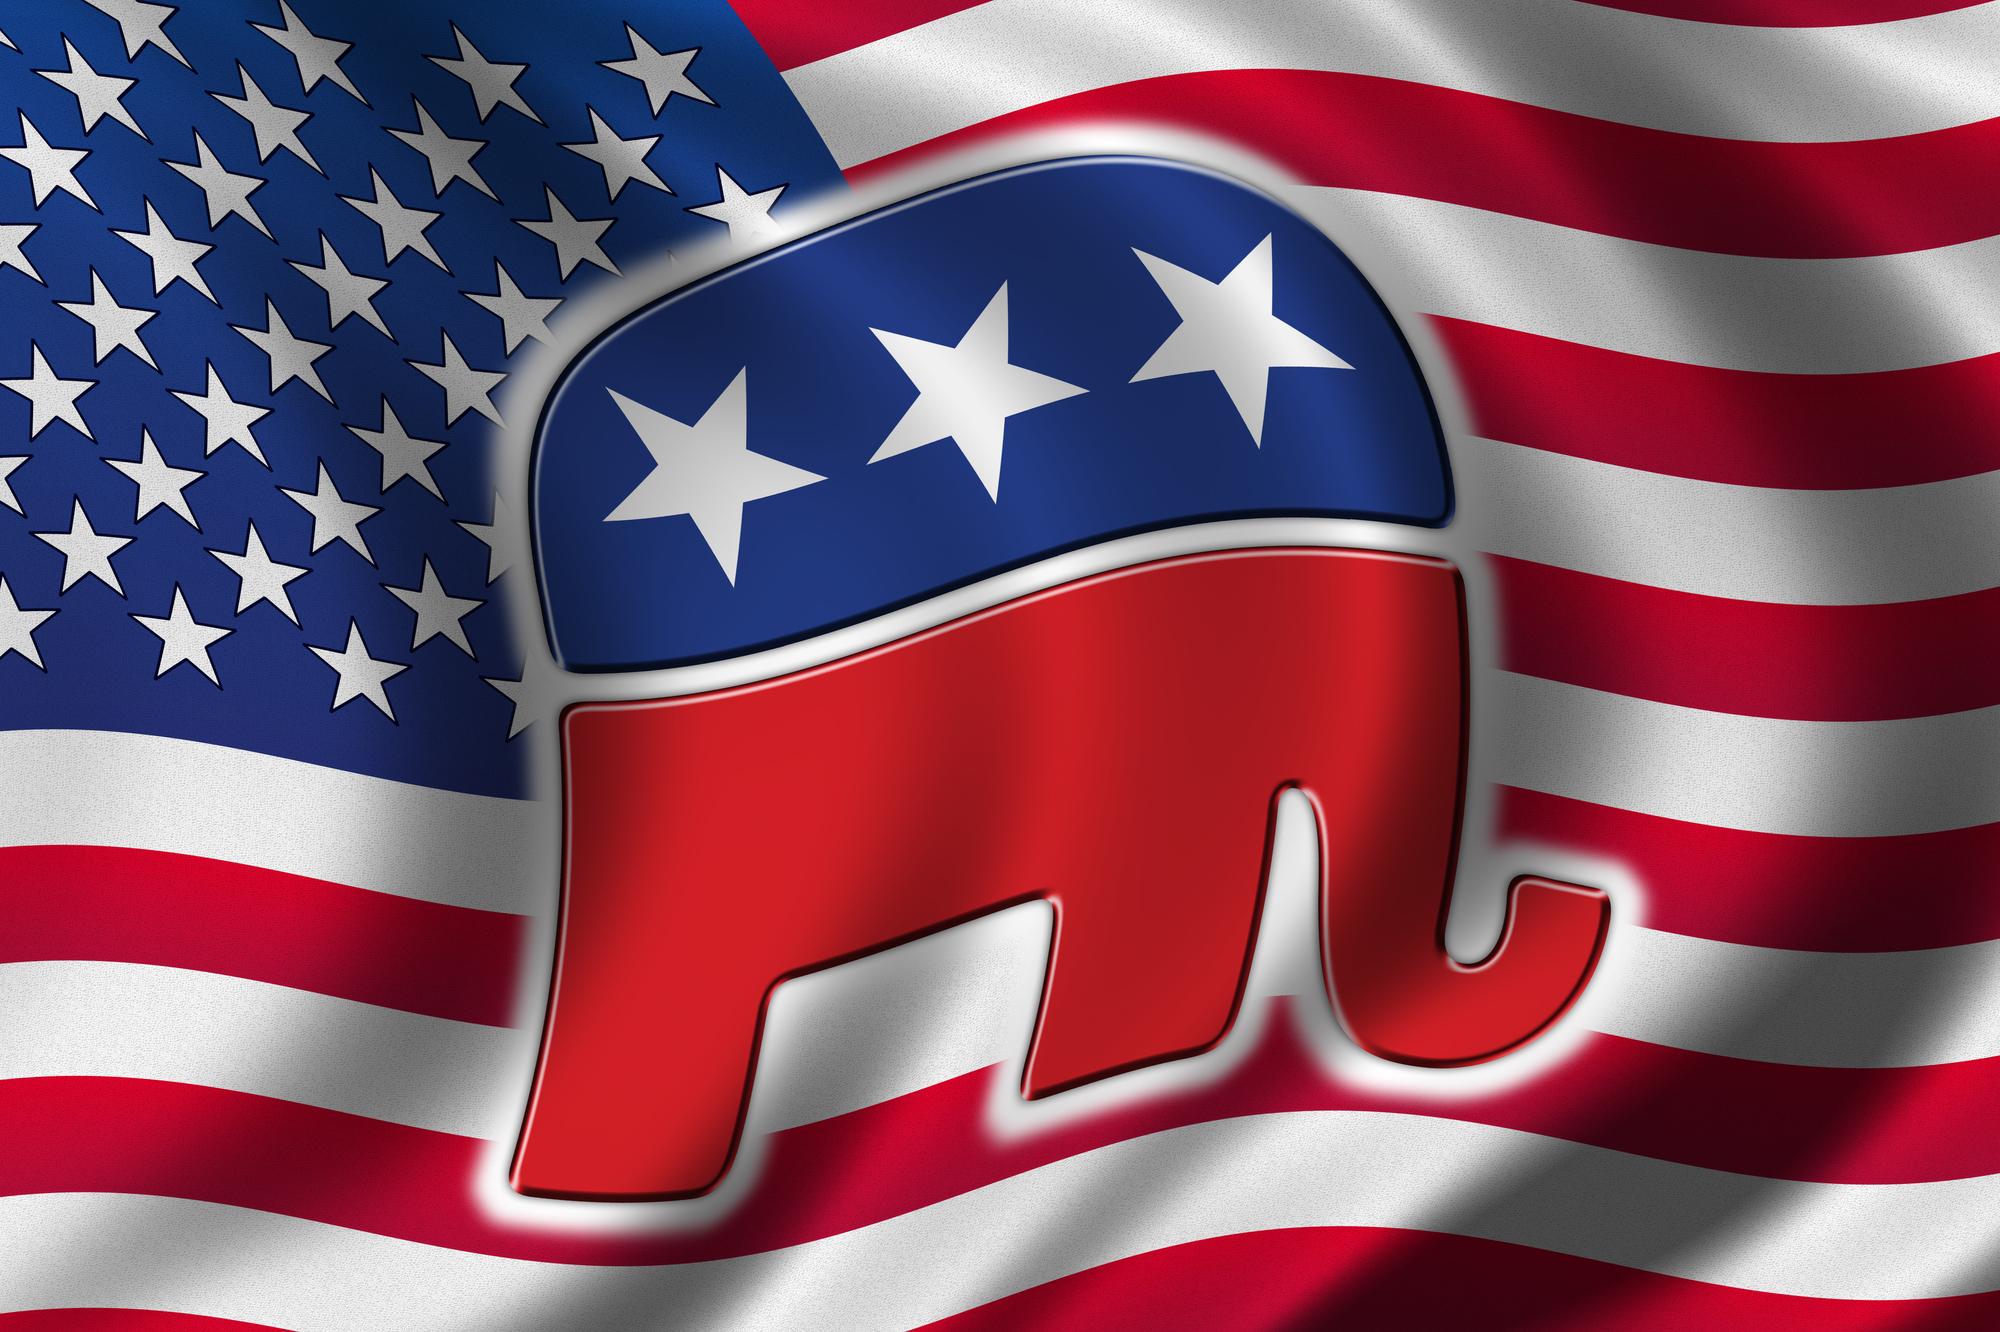 Amerikanische Flagge mit dem Elefanten der republikanischen Partei drauf, die vom RNC verwaltet wird